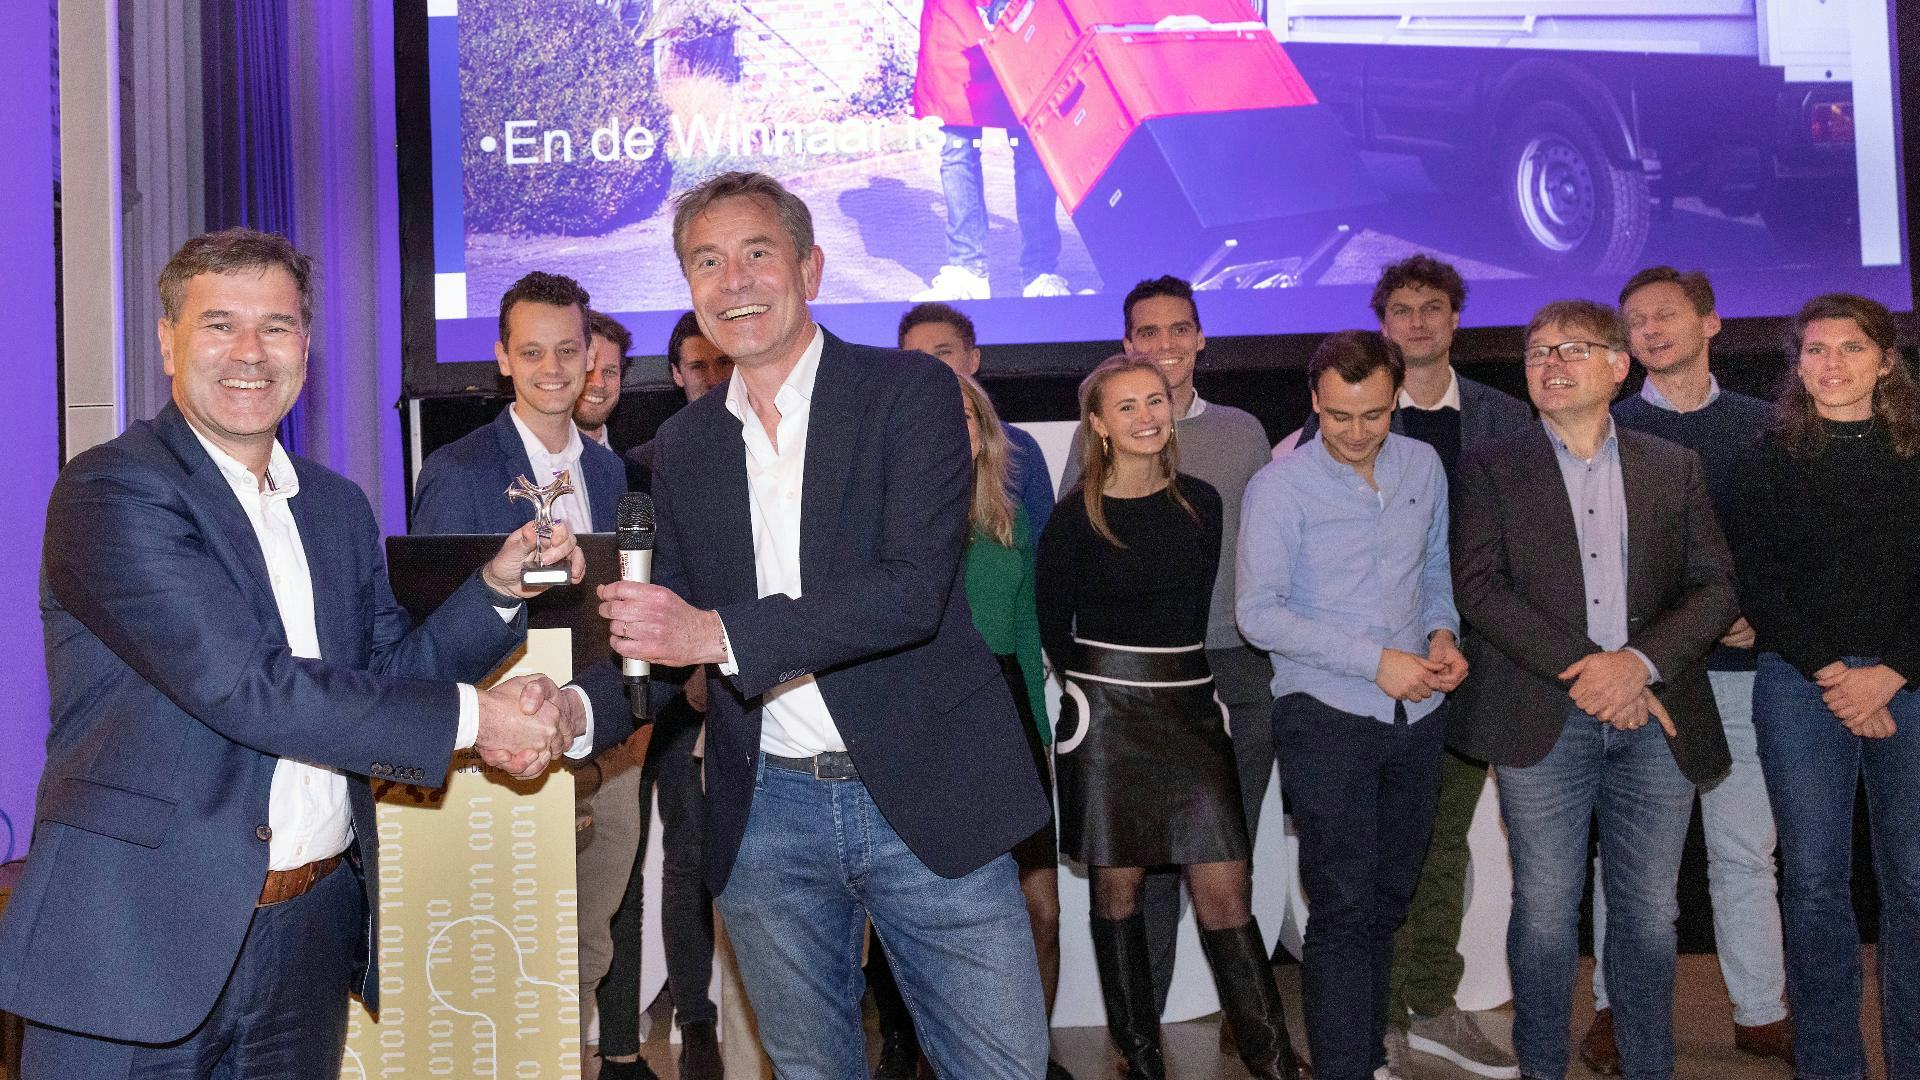 Jongste winnaar ooit van de Nederlandse Logistiek Prijs - VIDEO